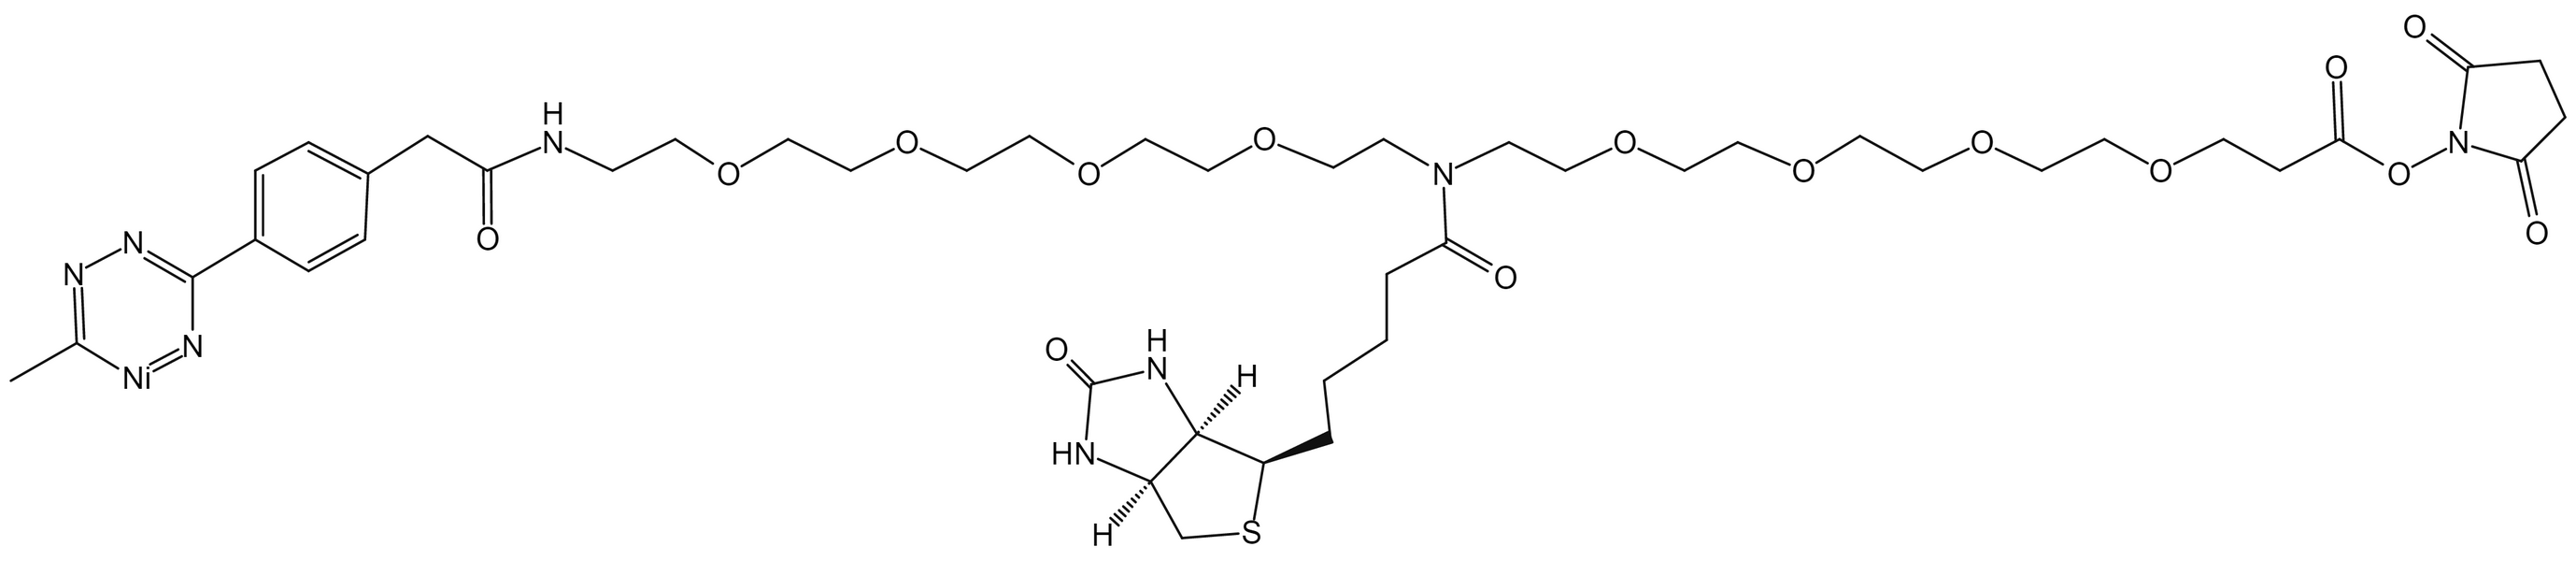 N-(Methyltetrazine-PEG4)-N-Biotin-PEG4-NHS